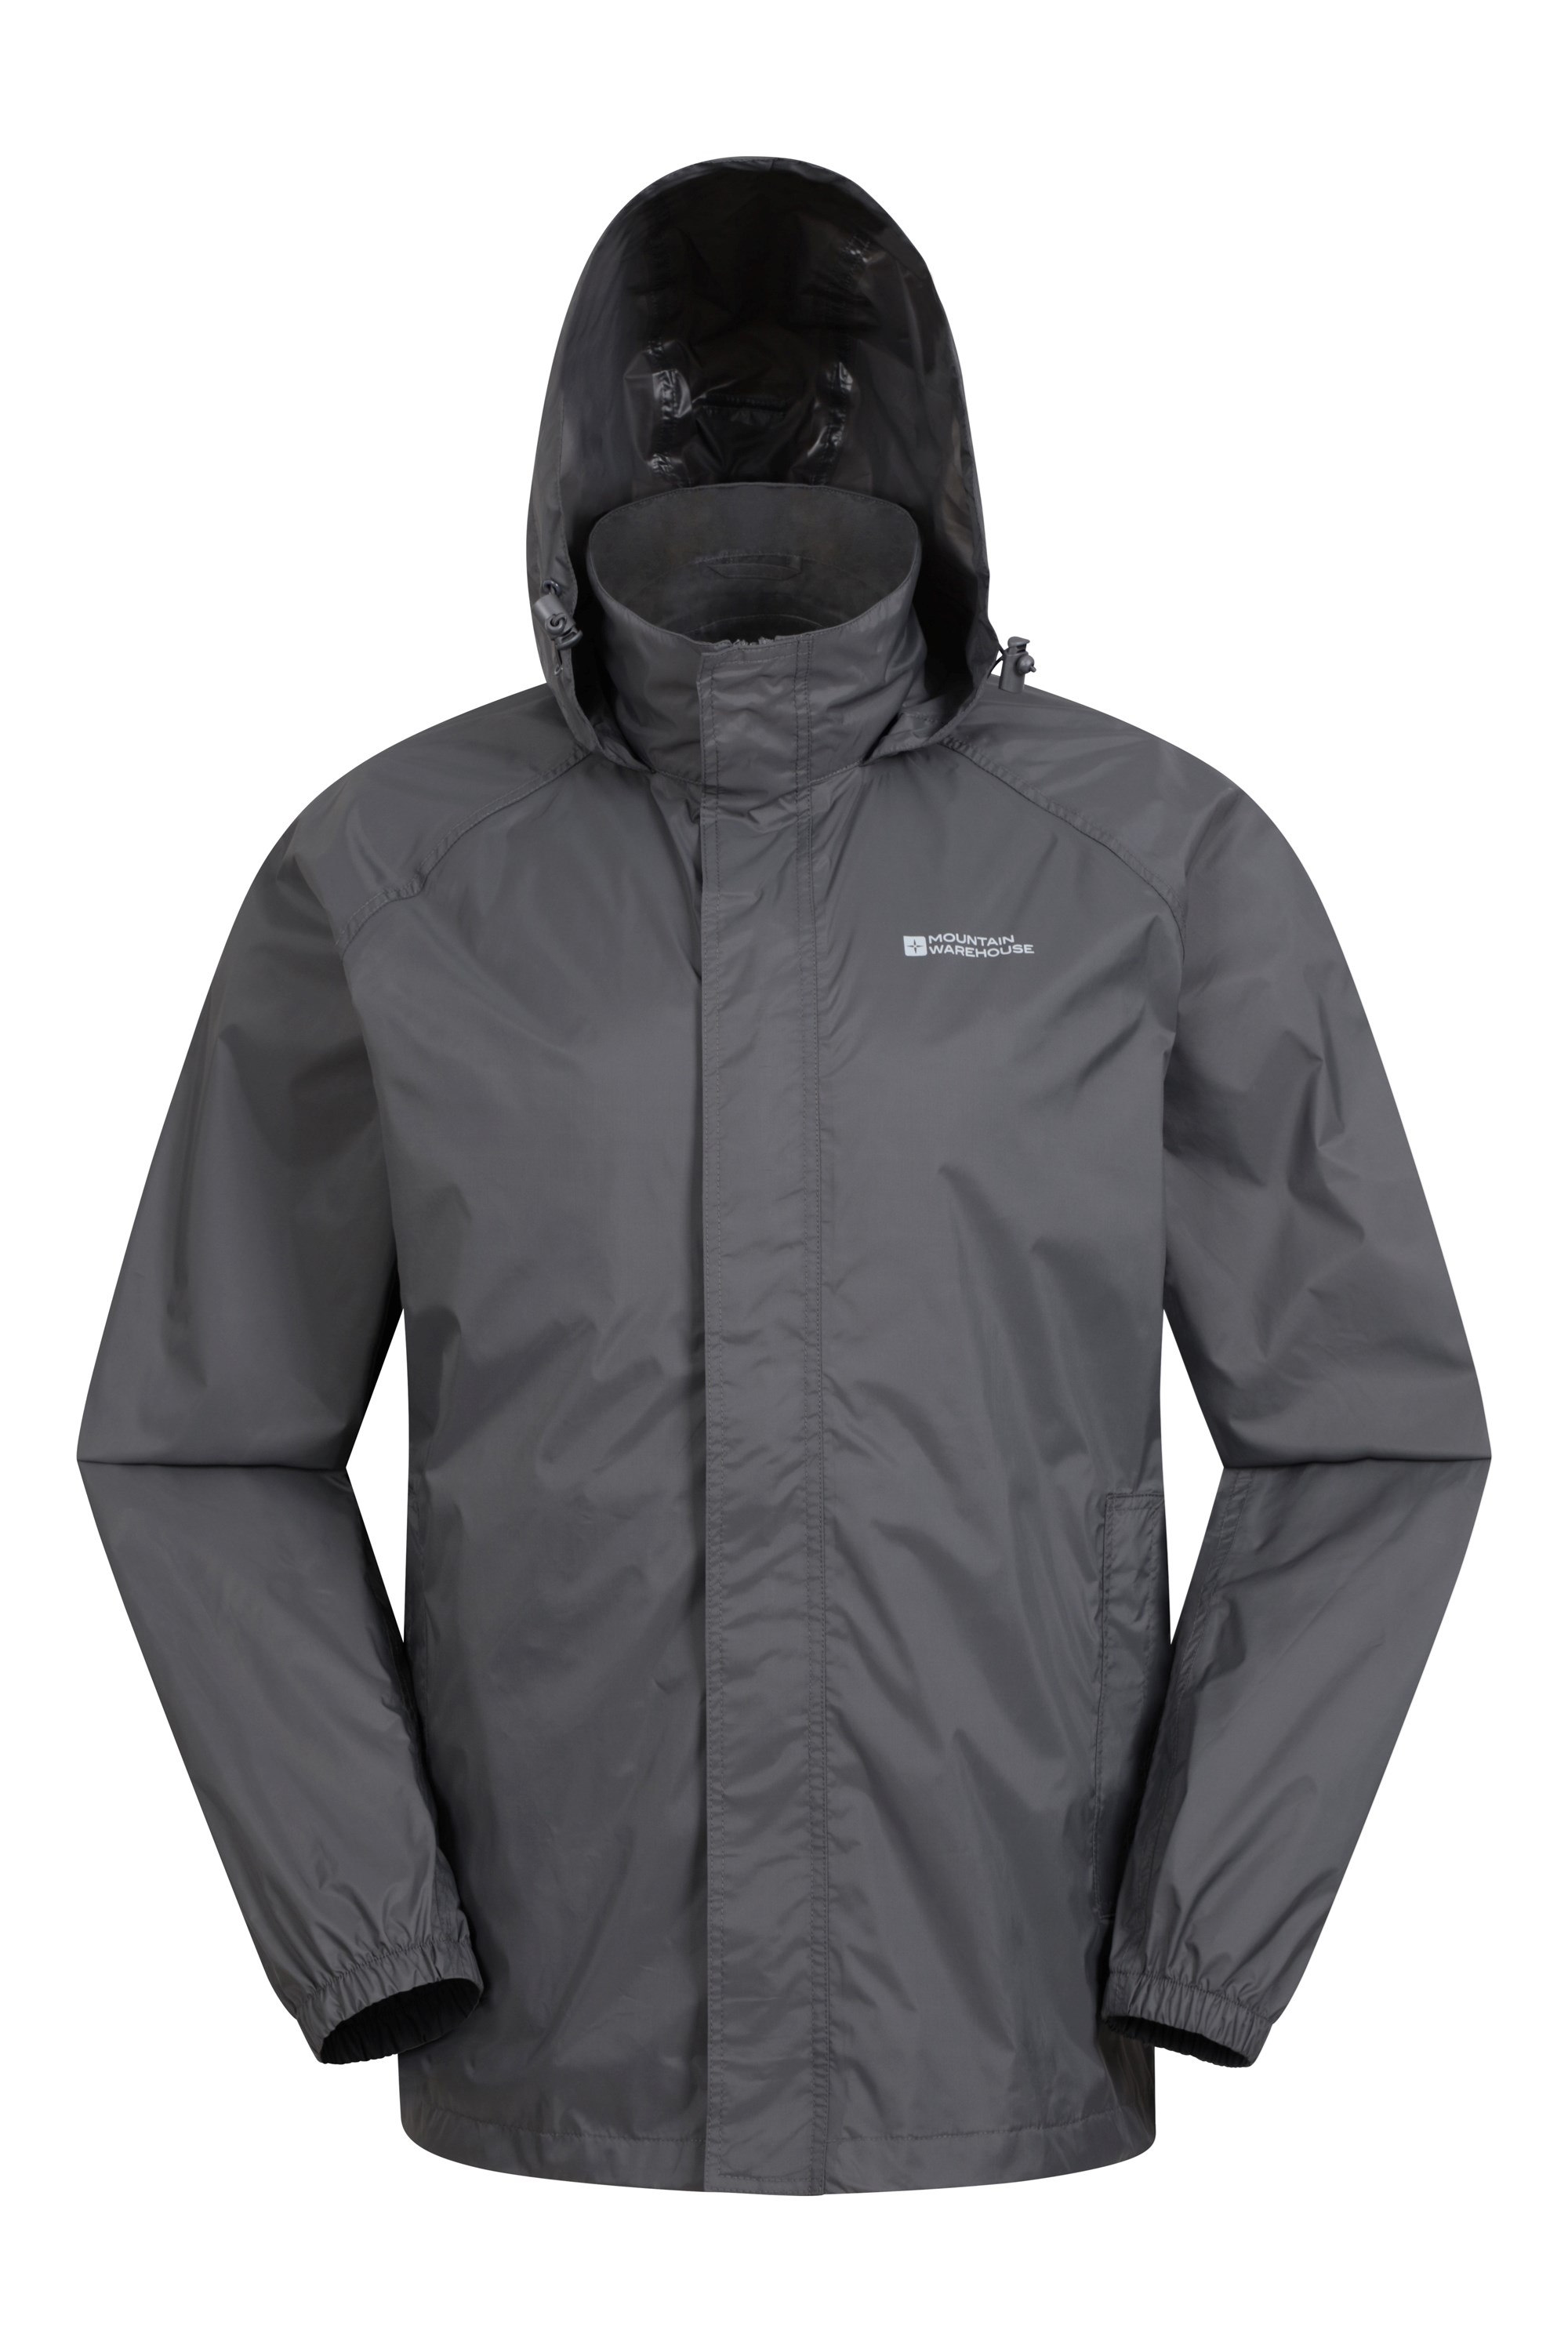 Pakka Ii Mens Waterproof Jacket - Grey